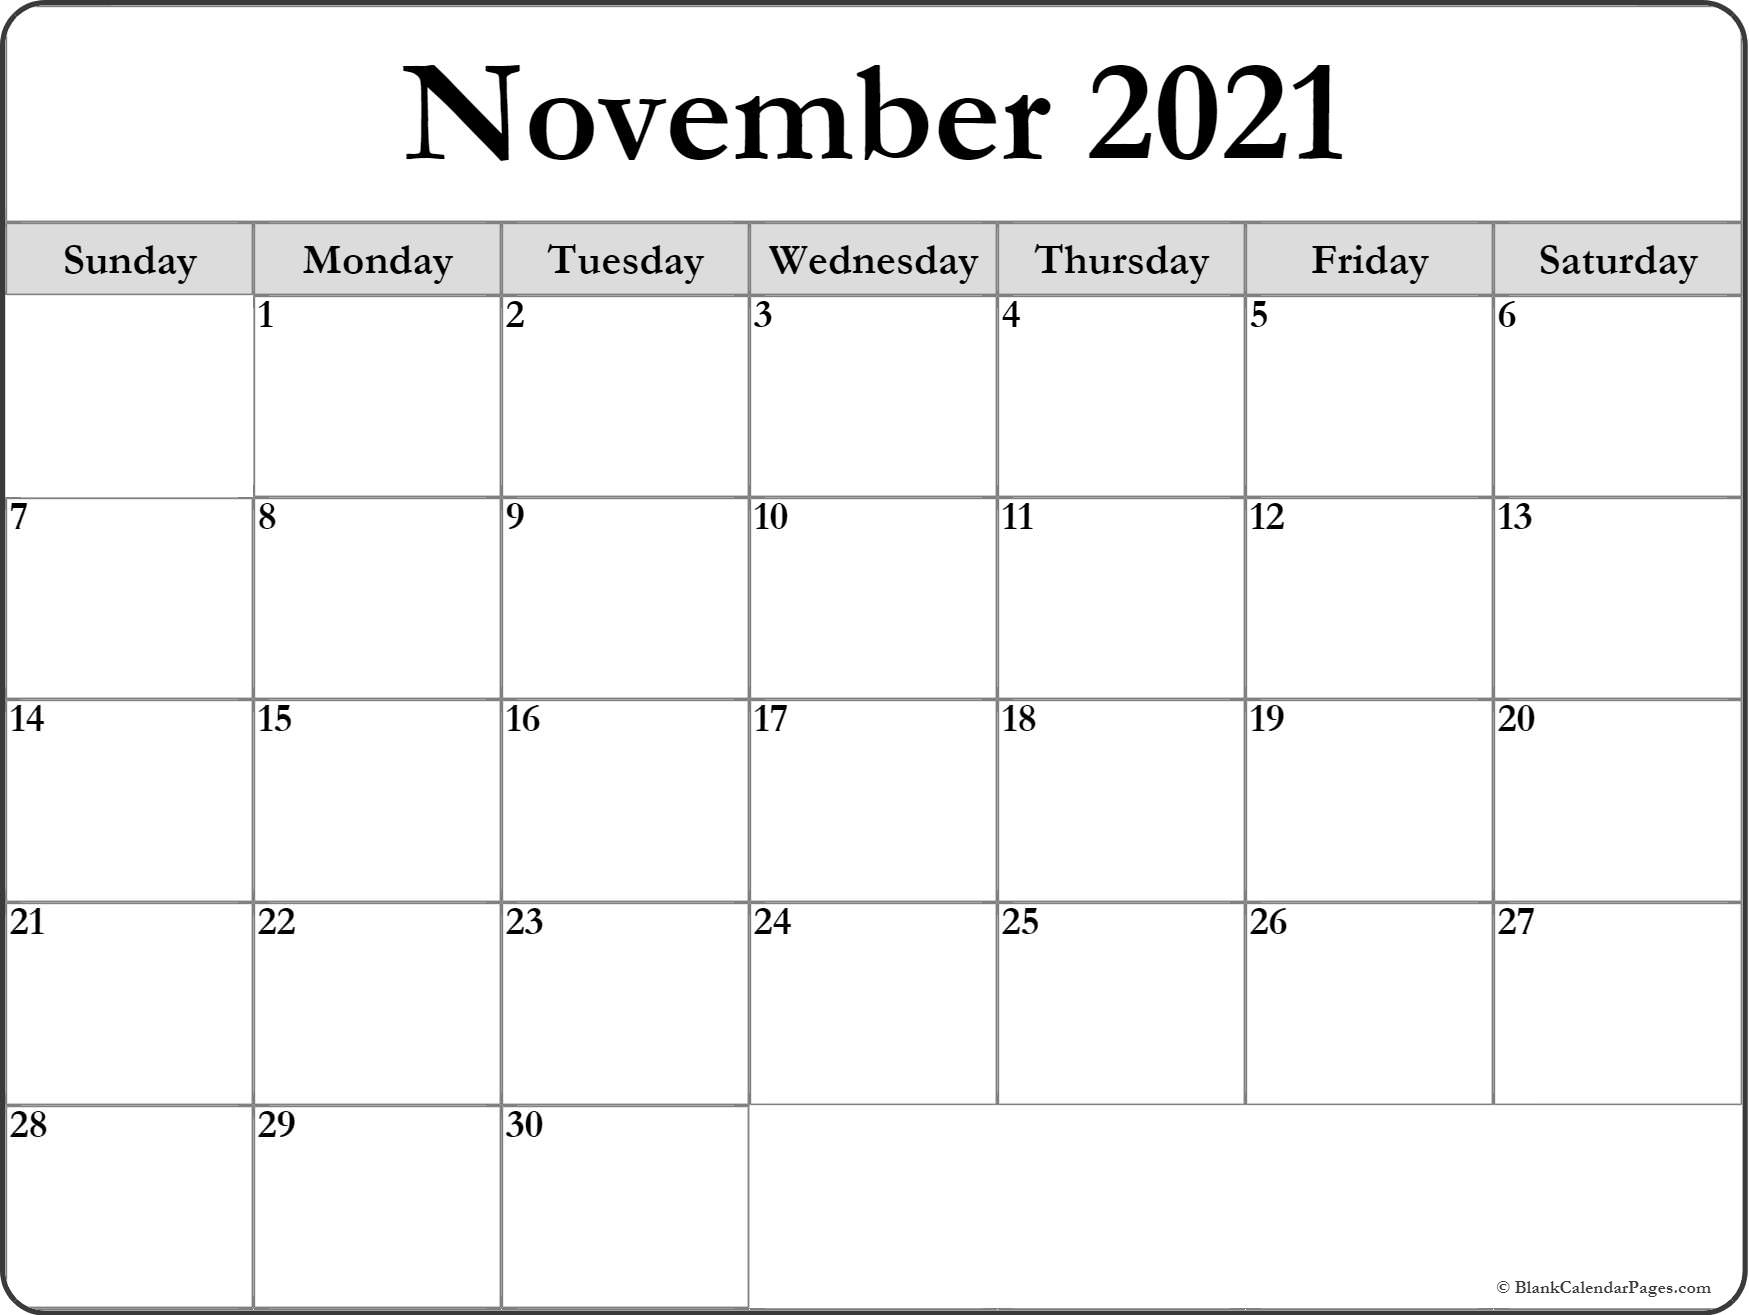 November 2021 Blank Calendar Templates. November 2020 To November 2021 Calendar